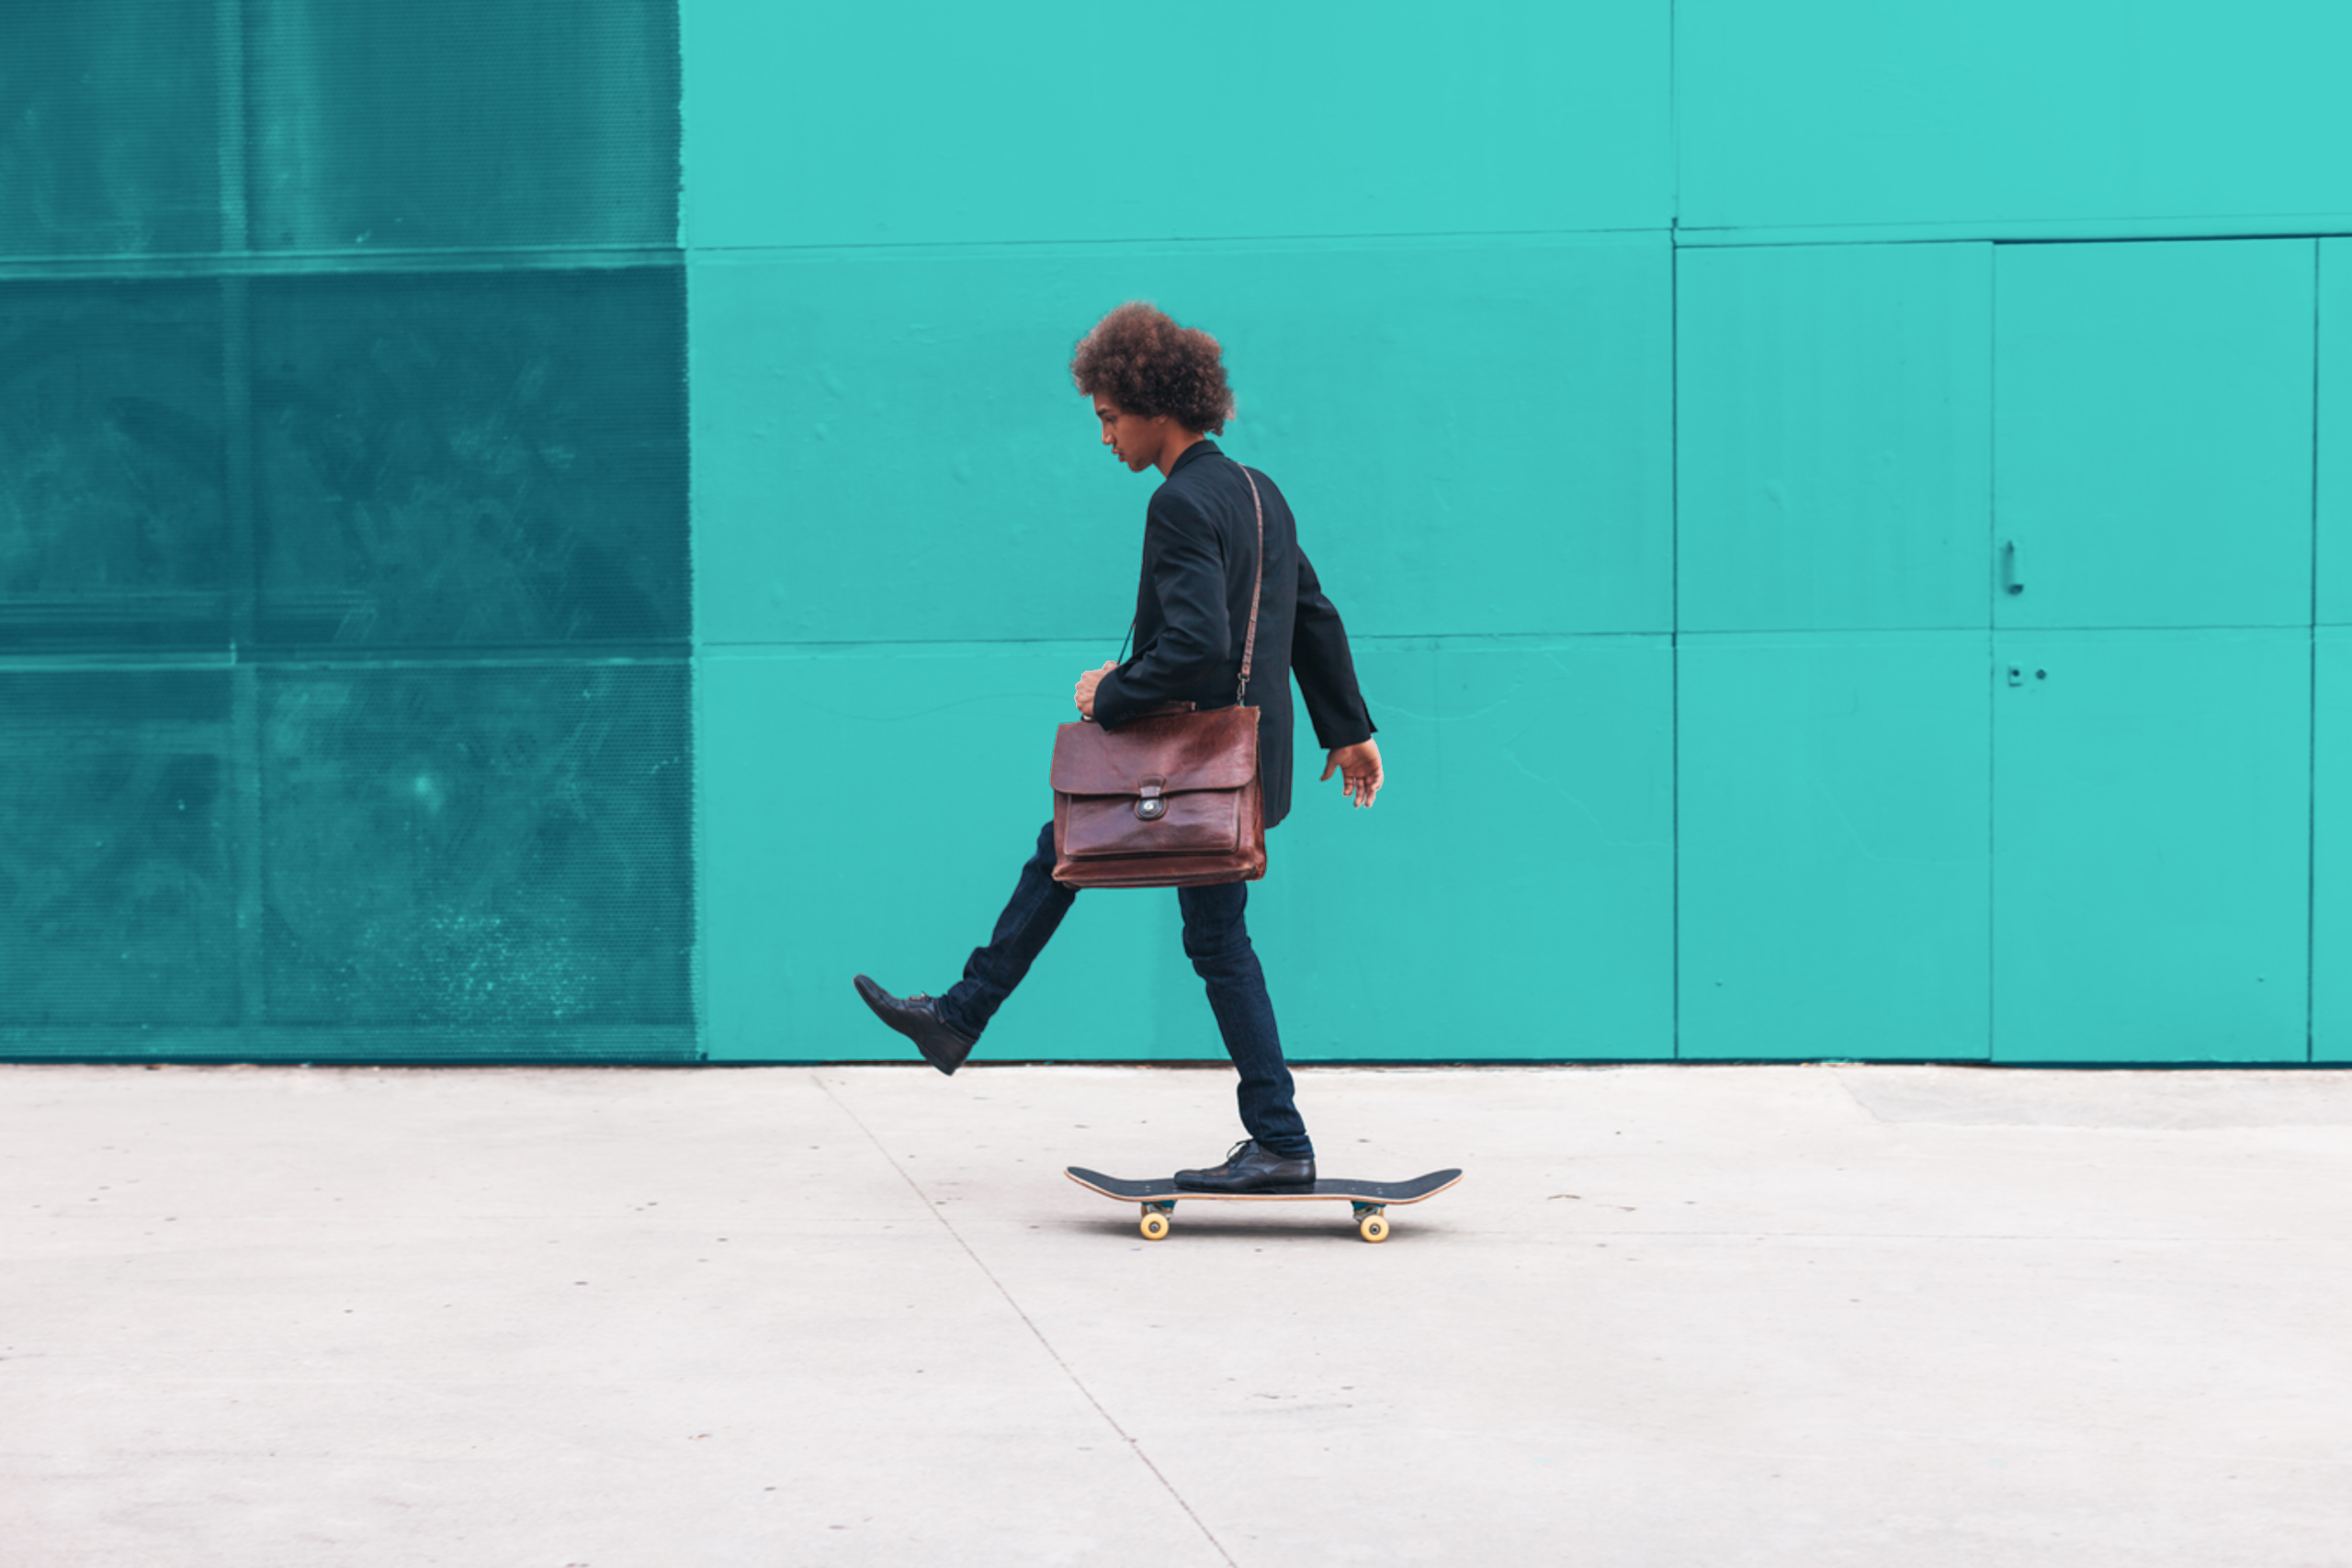 Ein junger Mann fährt auf einem Skateboard von rechts nach links. Vor dem Bild ist ein hellblauer Filter.